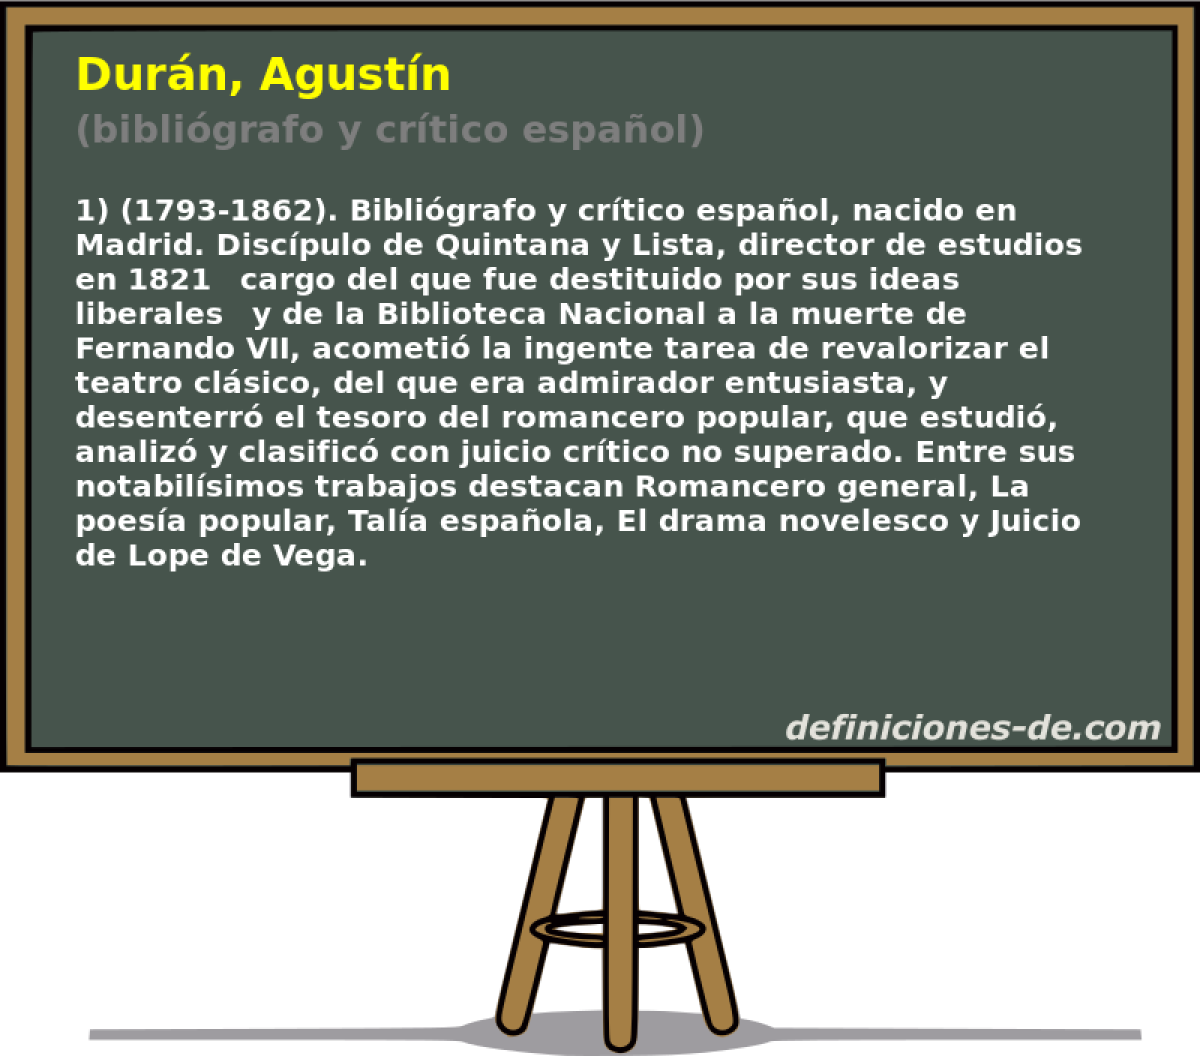 Durn, Agustn (bibligrafo y crtico espaol)